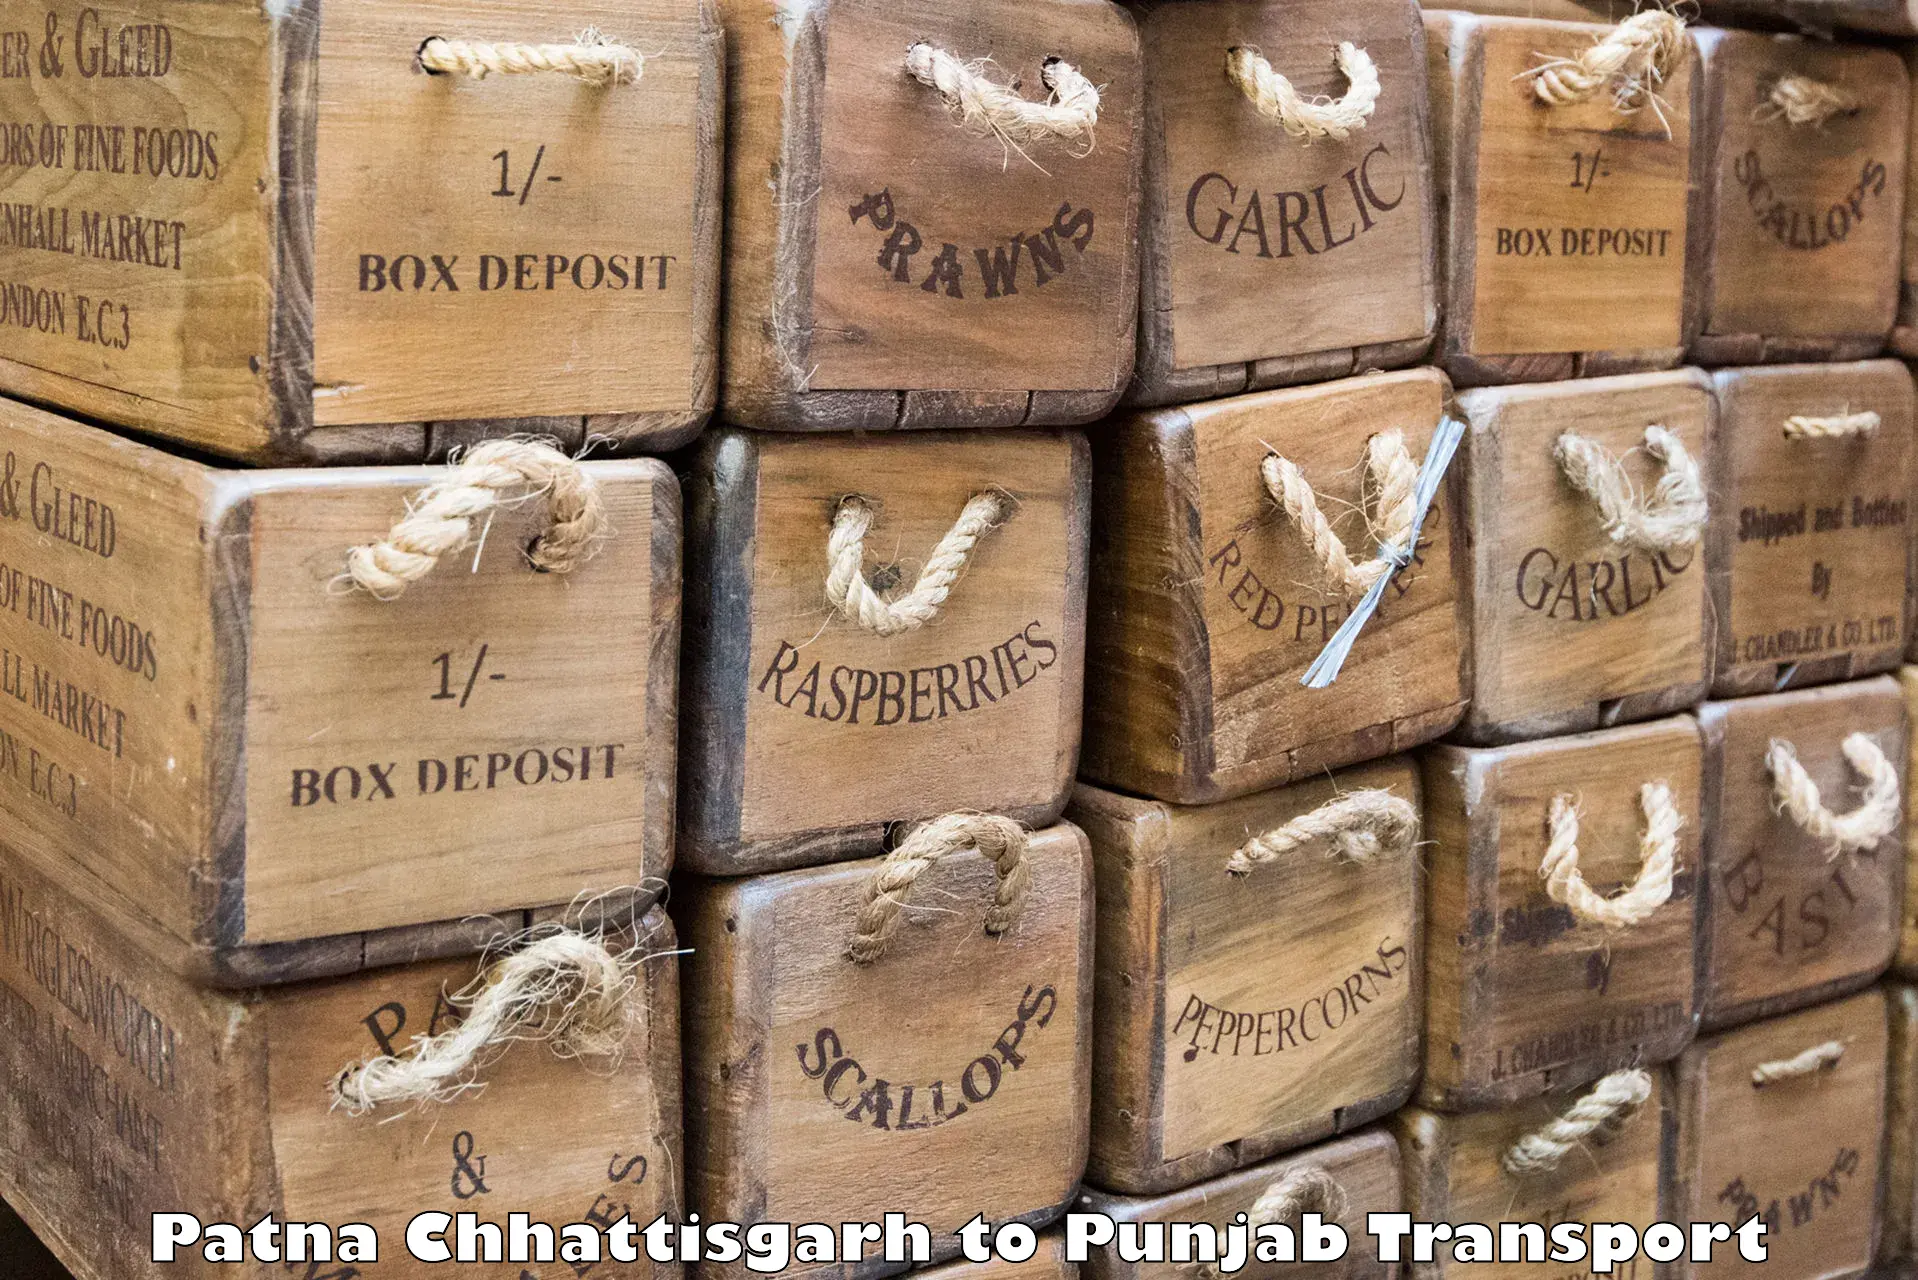 Delivery service Patna Chhattisgarh to Malout